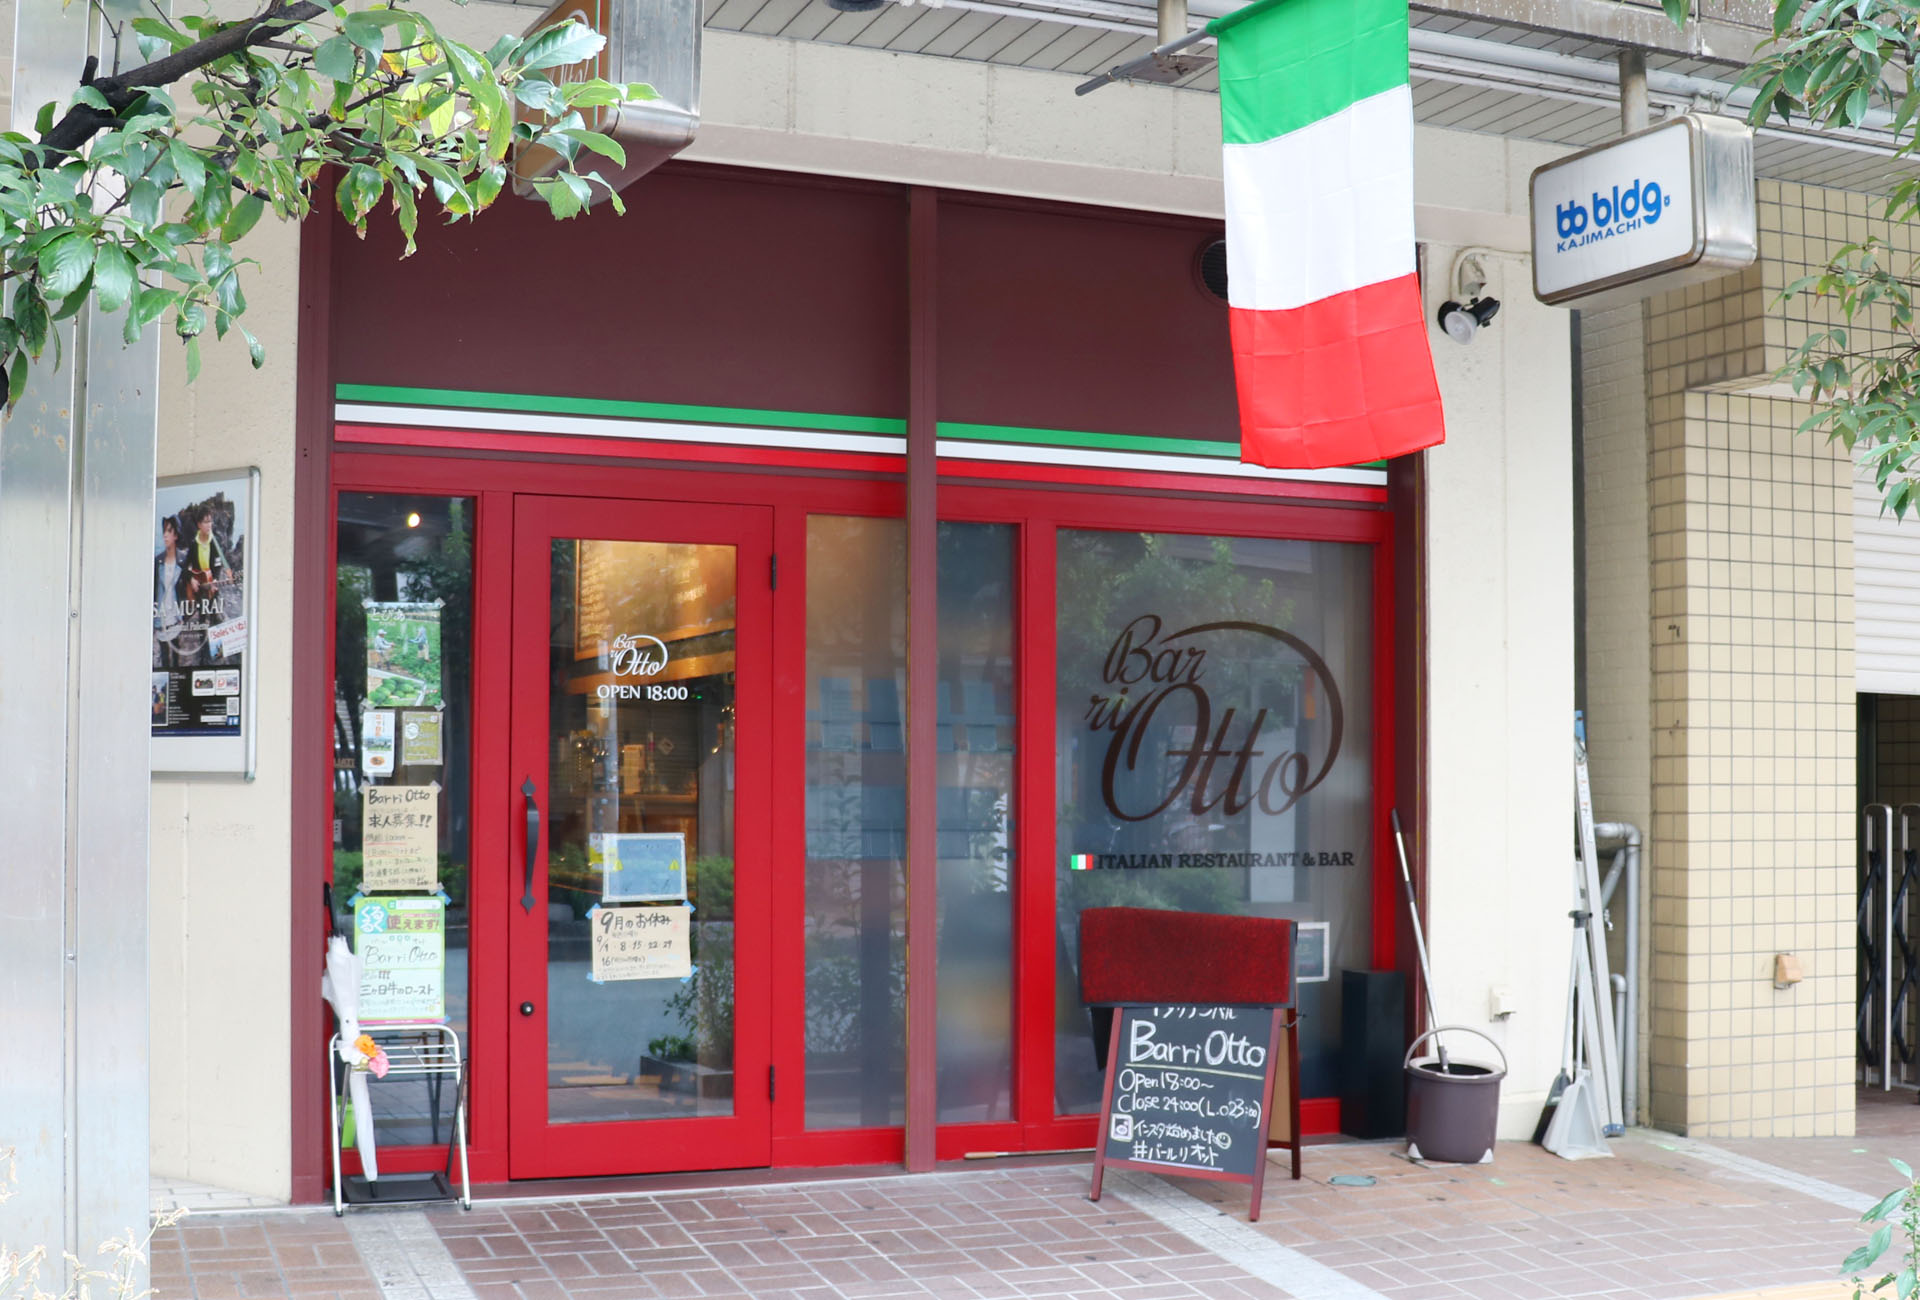 Italian Bar ri otto,バル・リ・オット,イタリアンバル